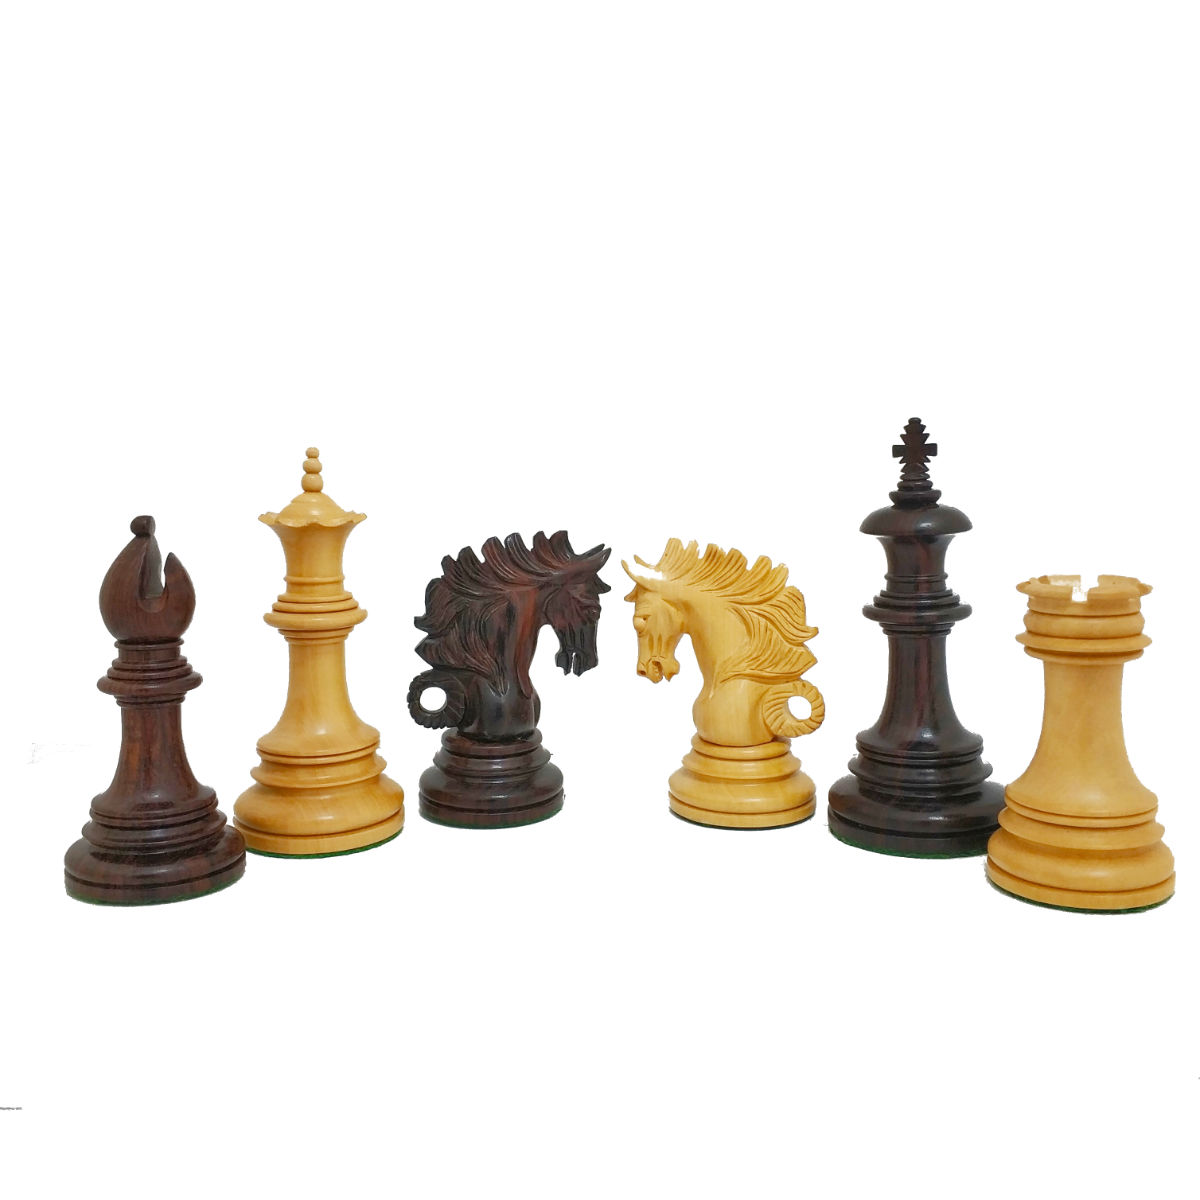 כלי שחמט מגנוס שישאם Magnus Shisham